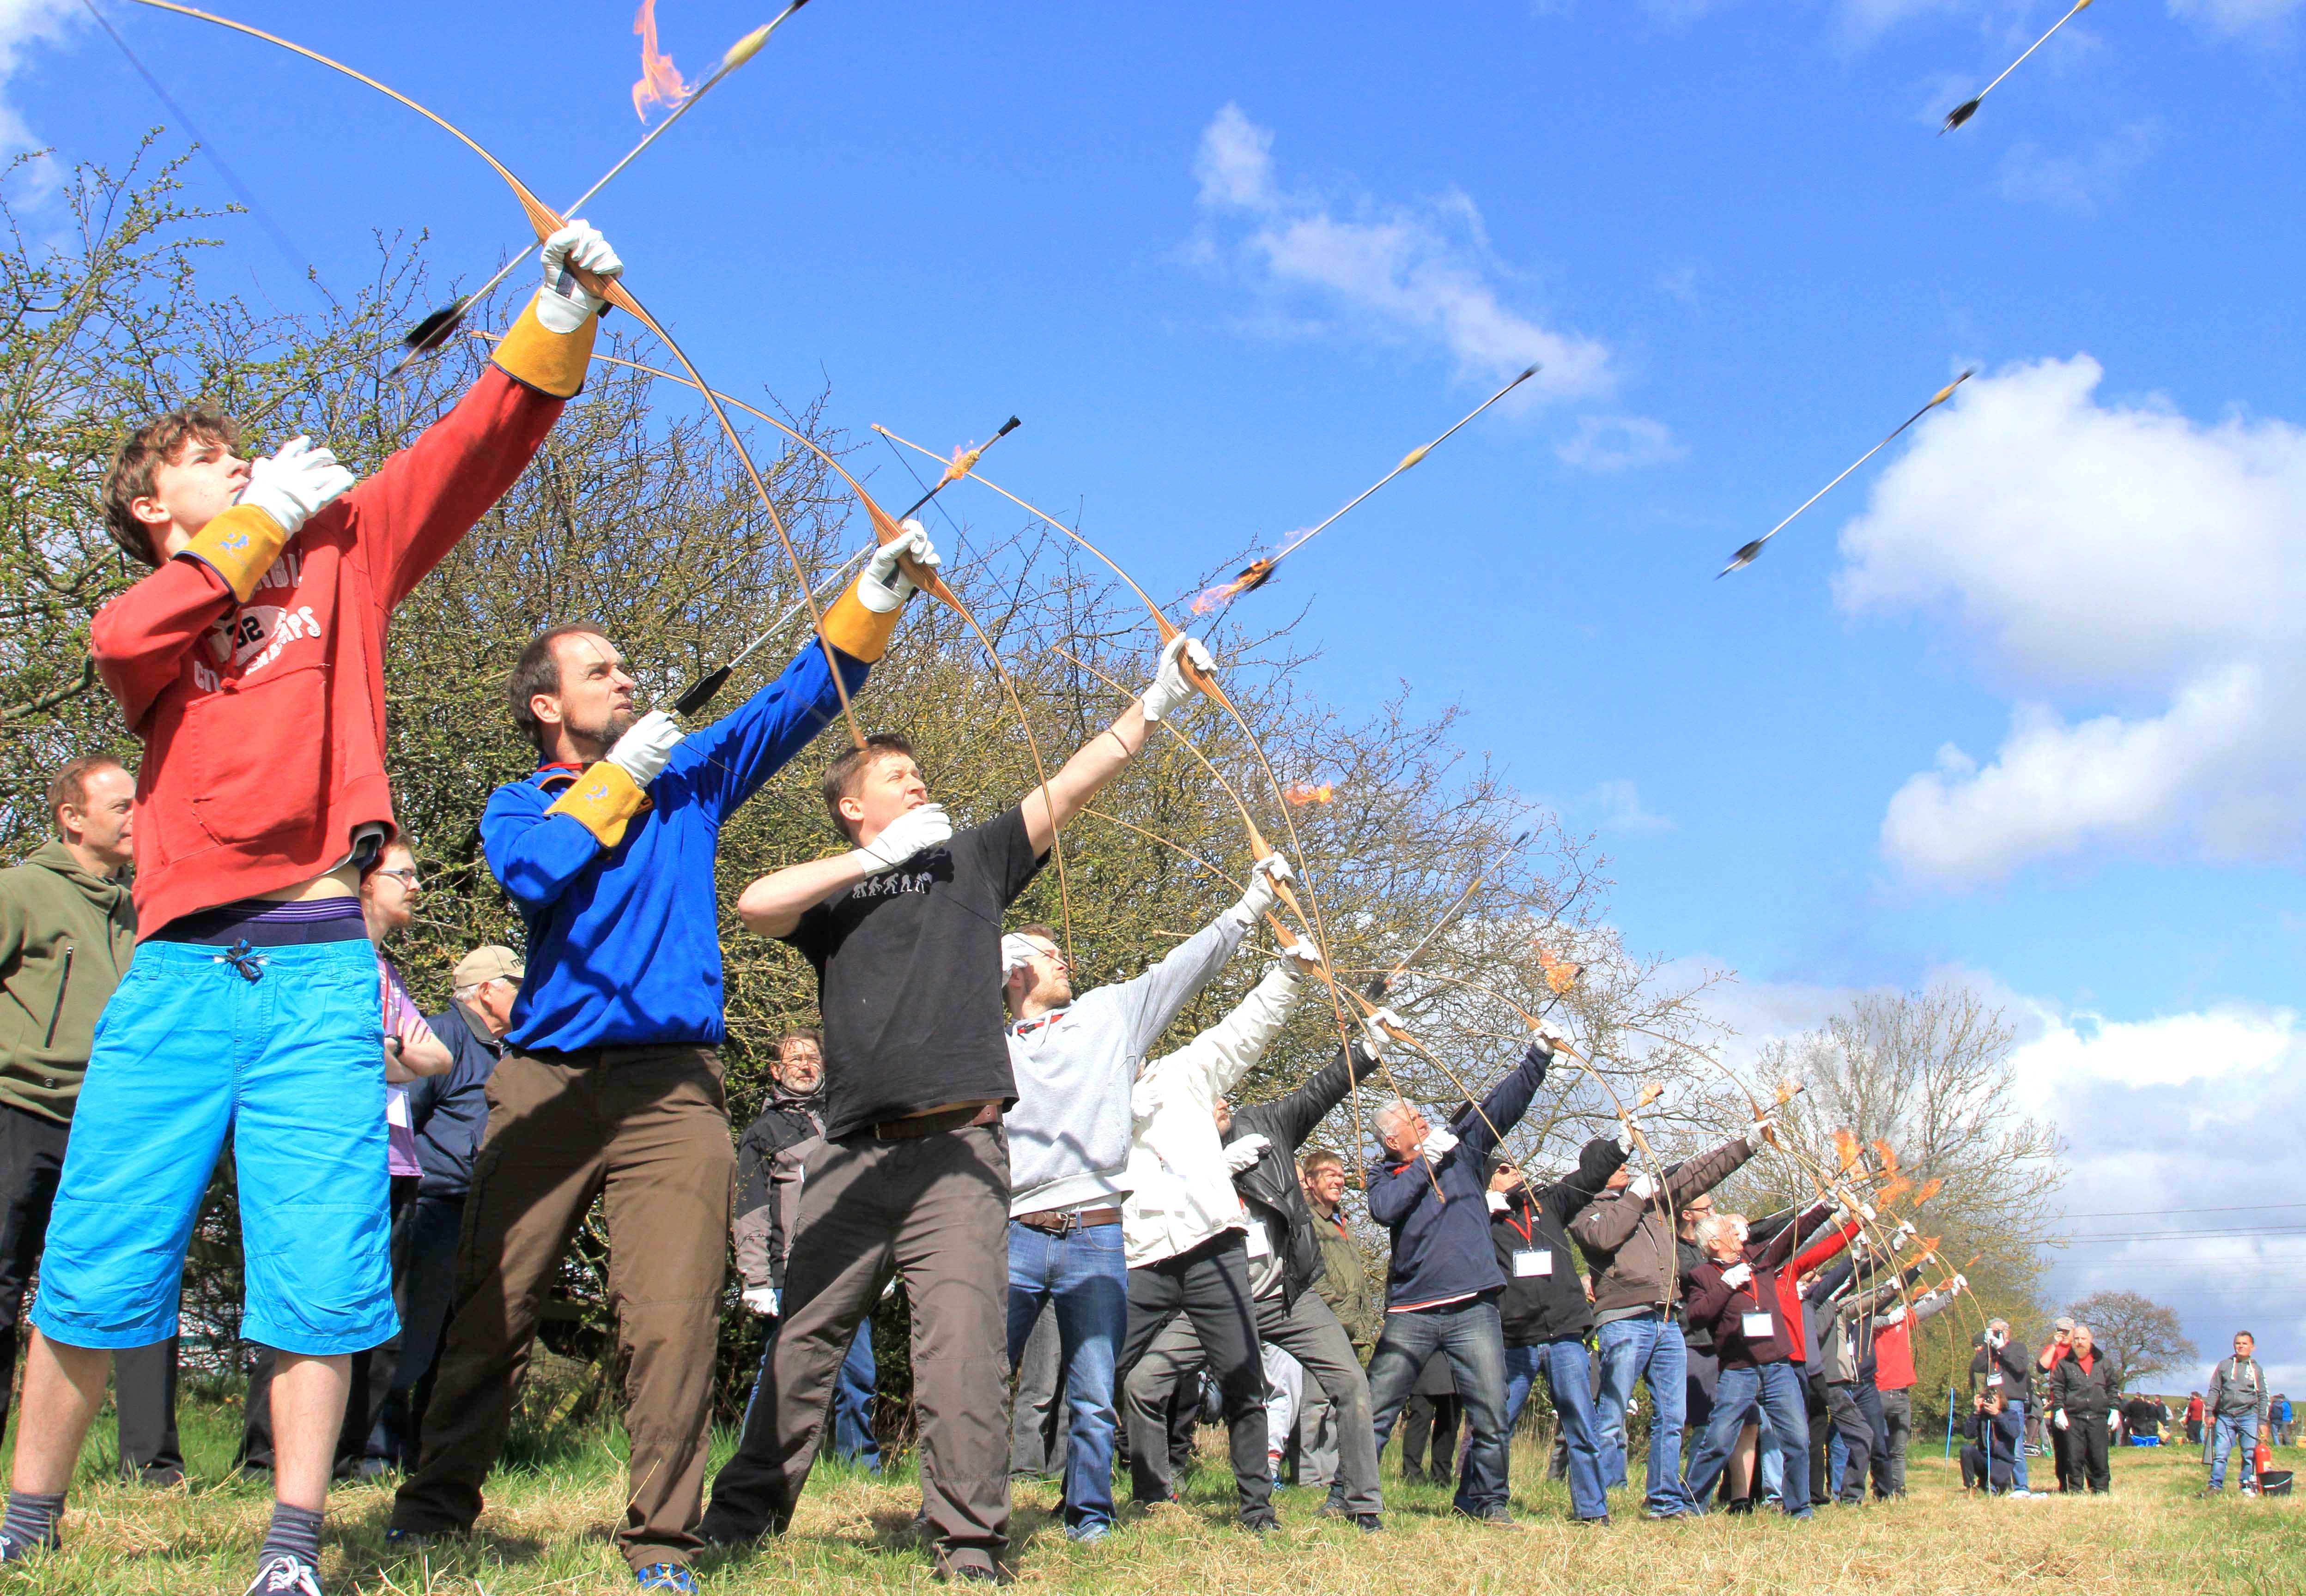 Archers on Target for Kynren